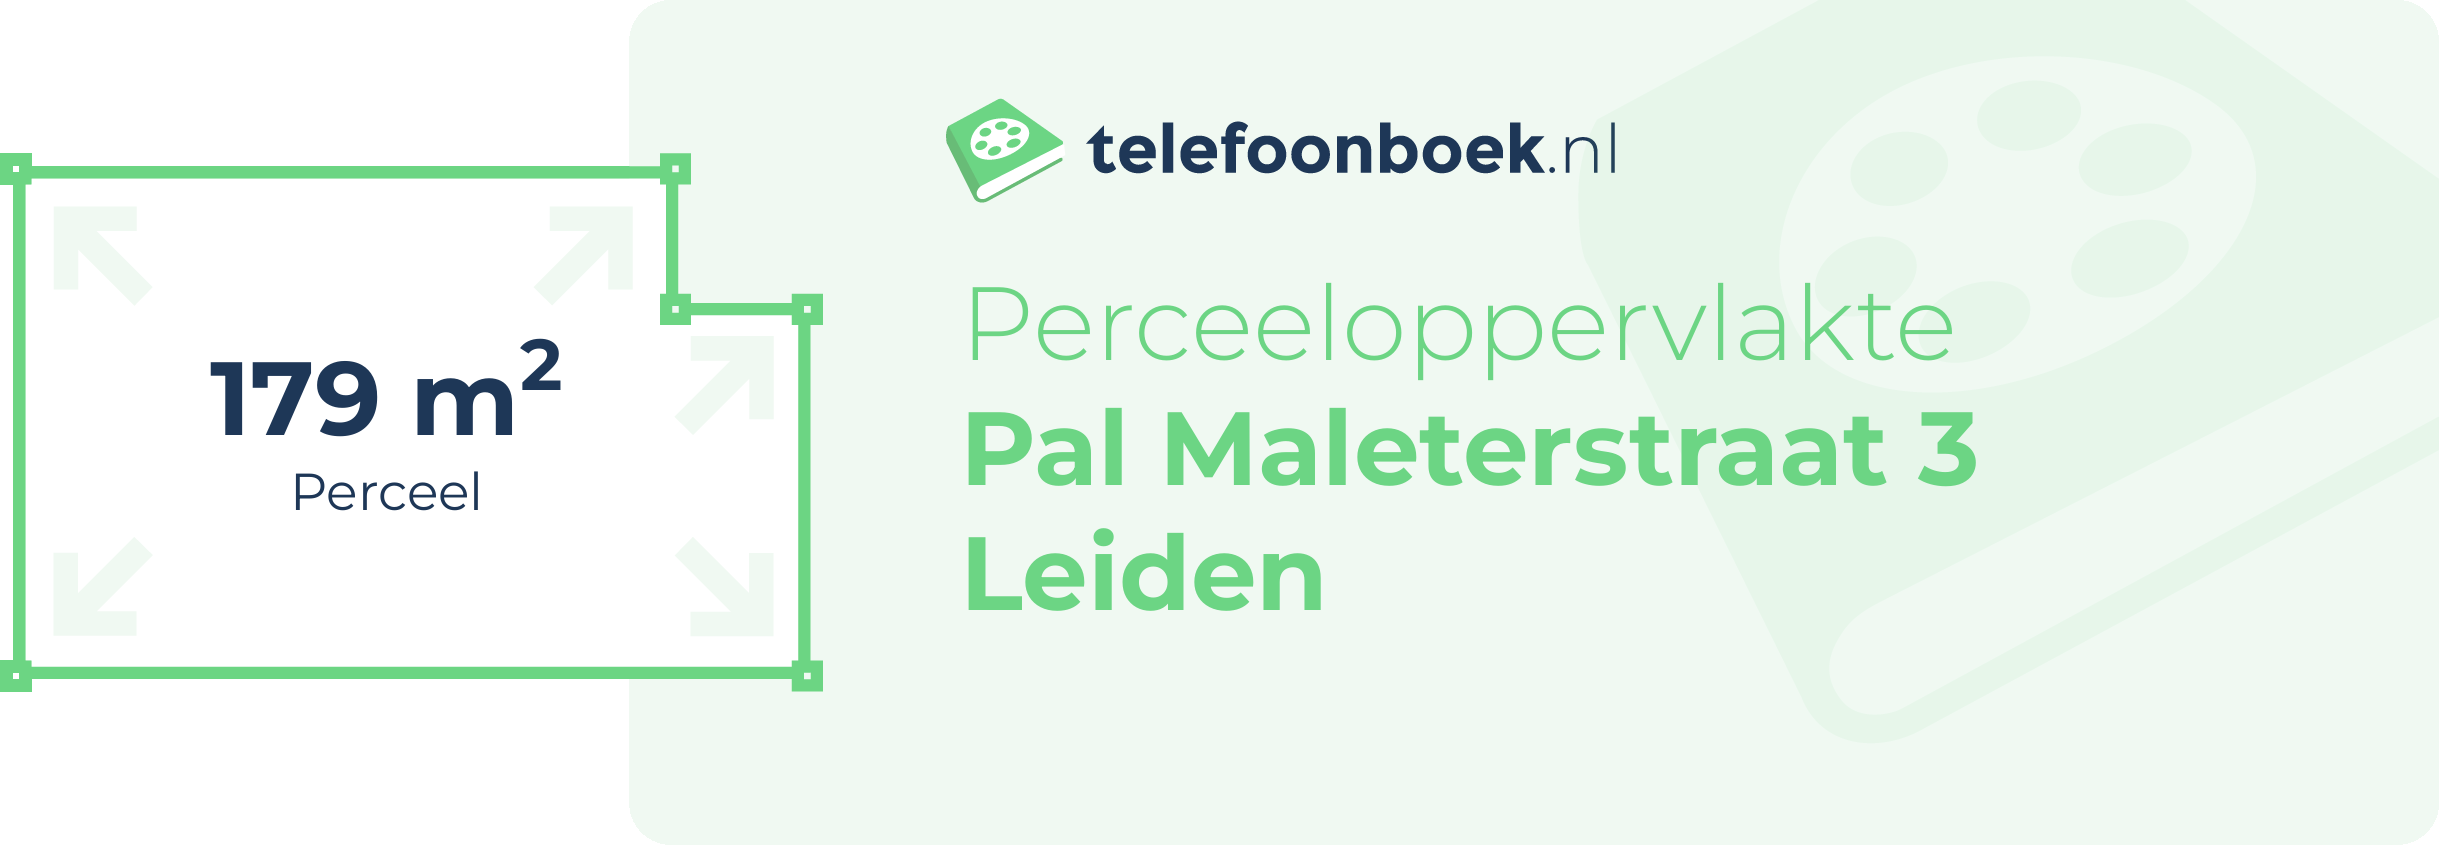 Perceeloppervlakte Pal Maleterstraat 3 Leiden